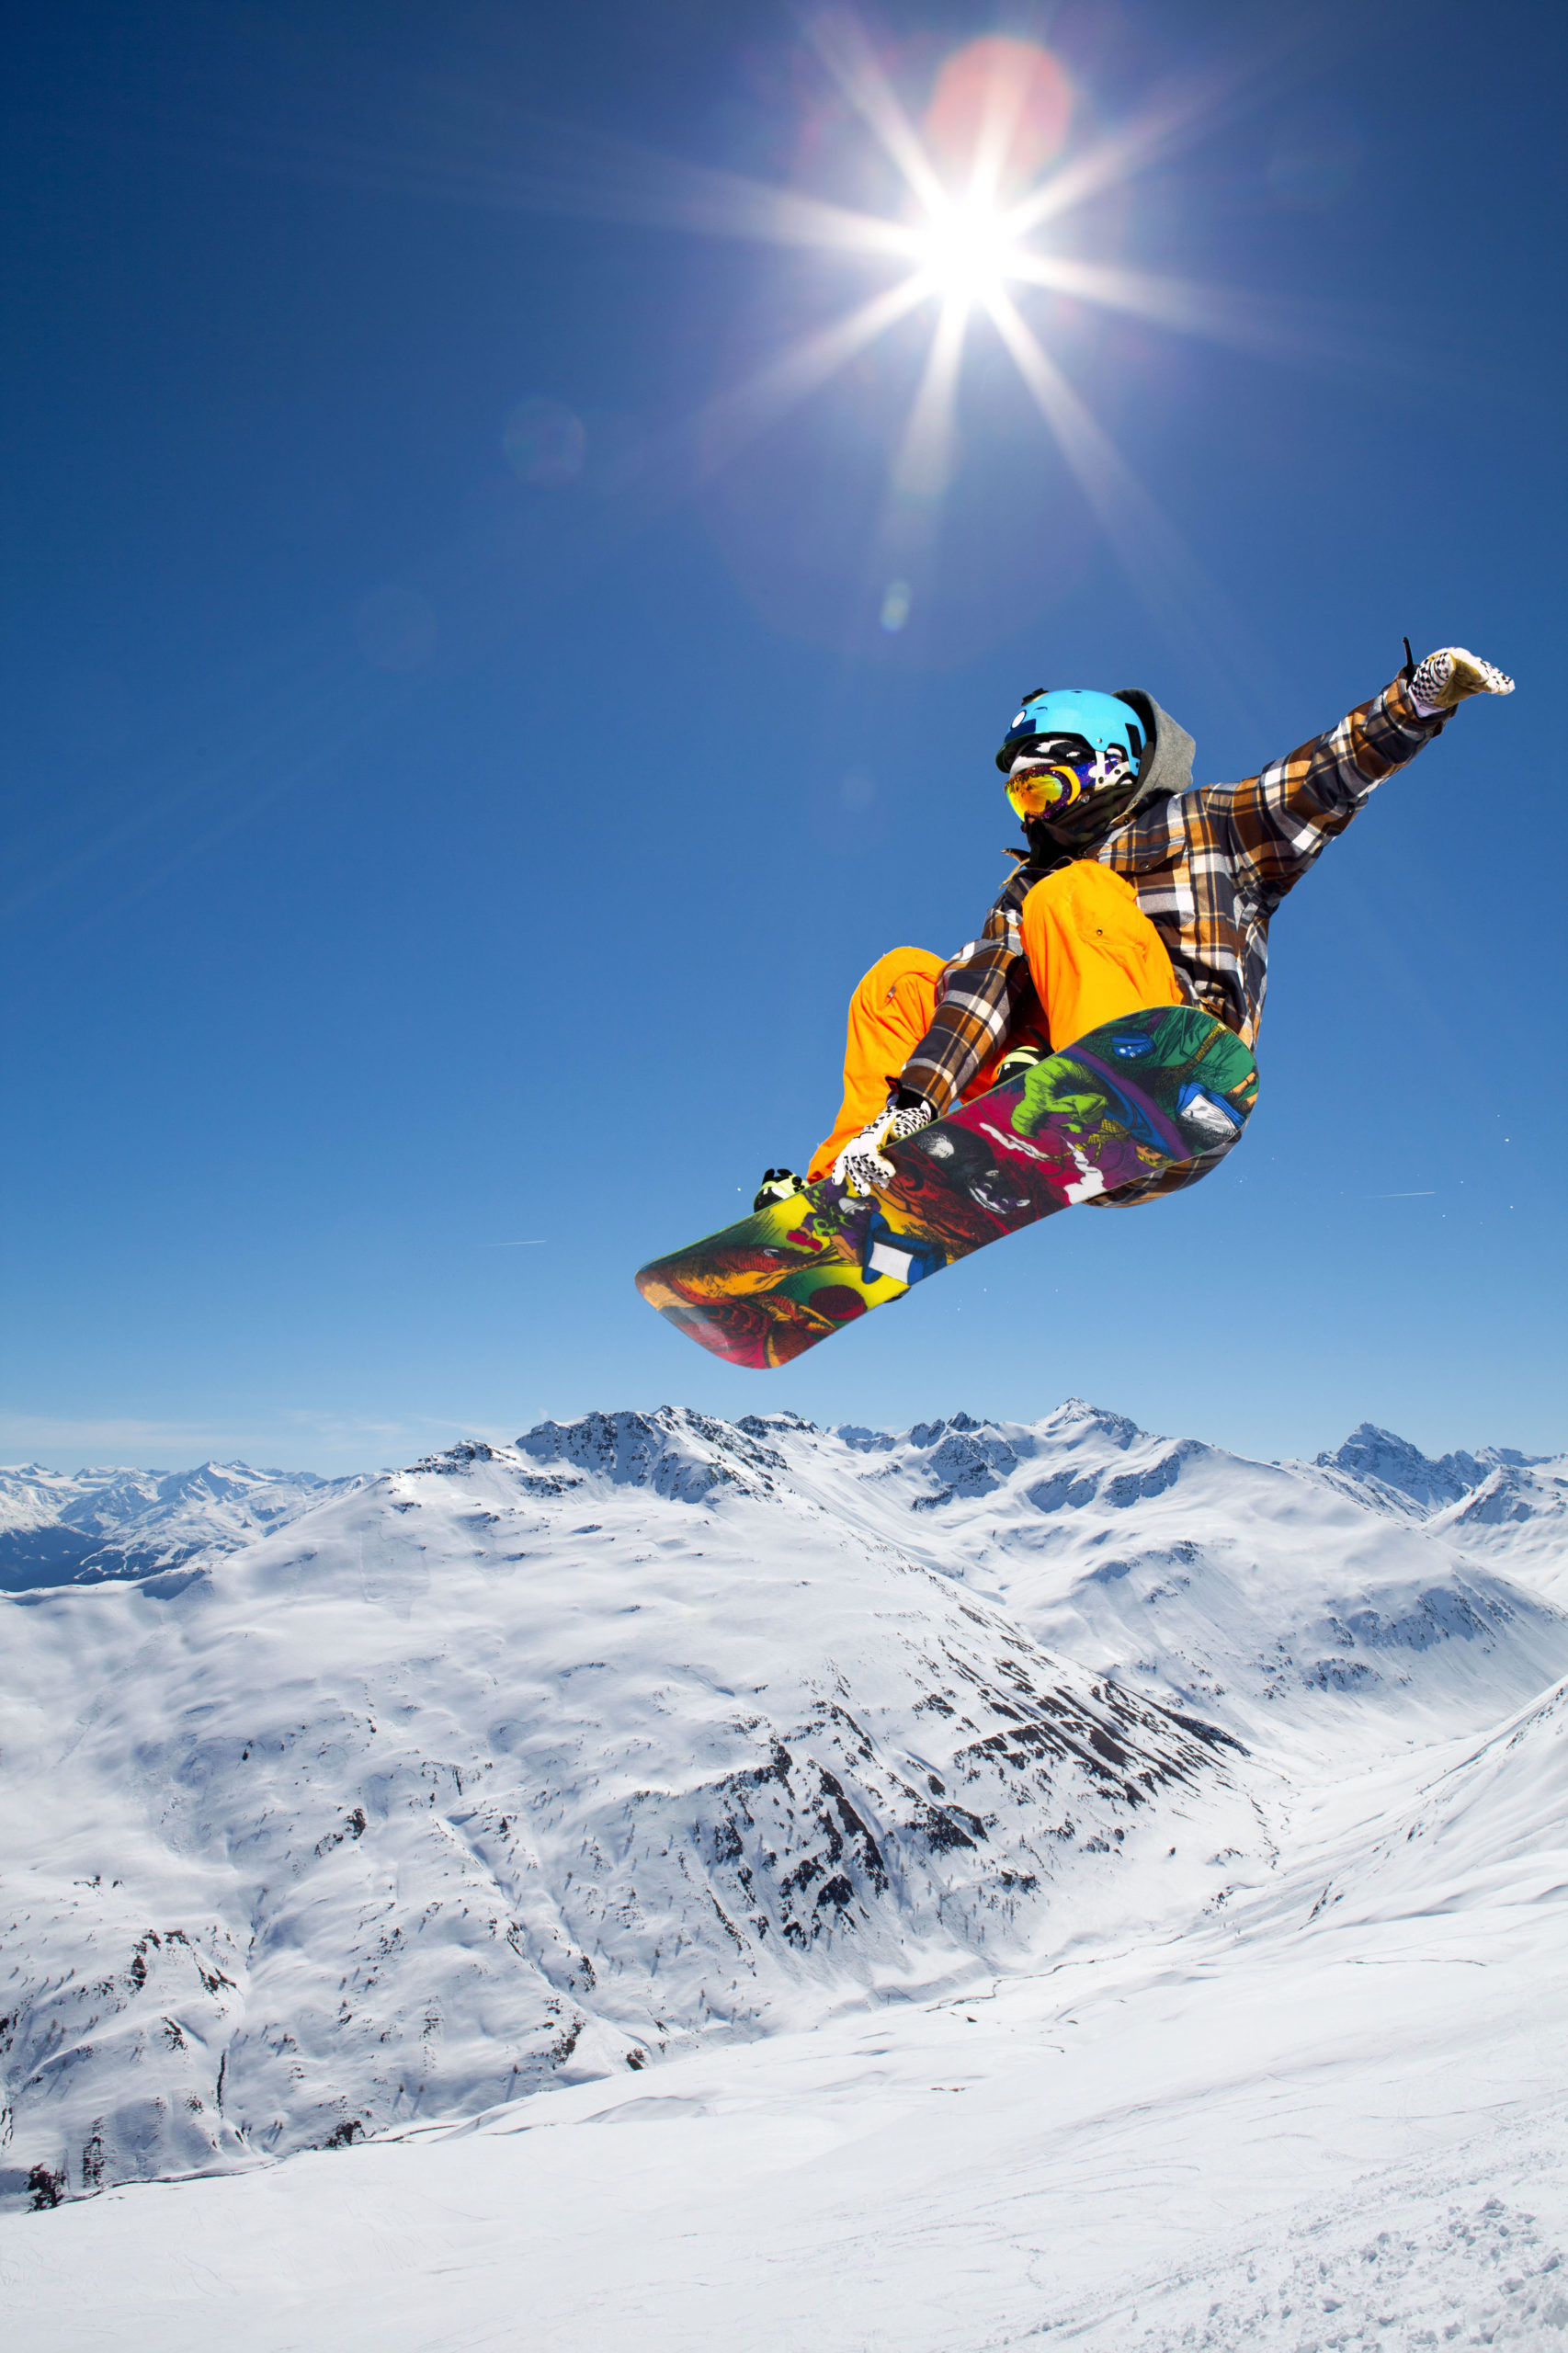 Skisportler mit erhöhtem Risiko für Hautkrebs